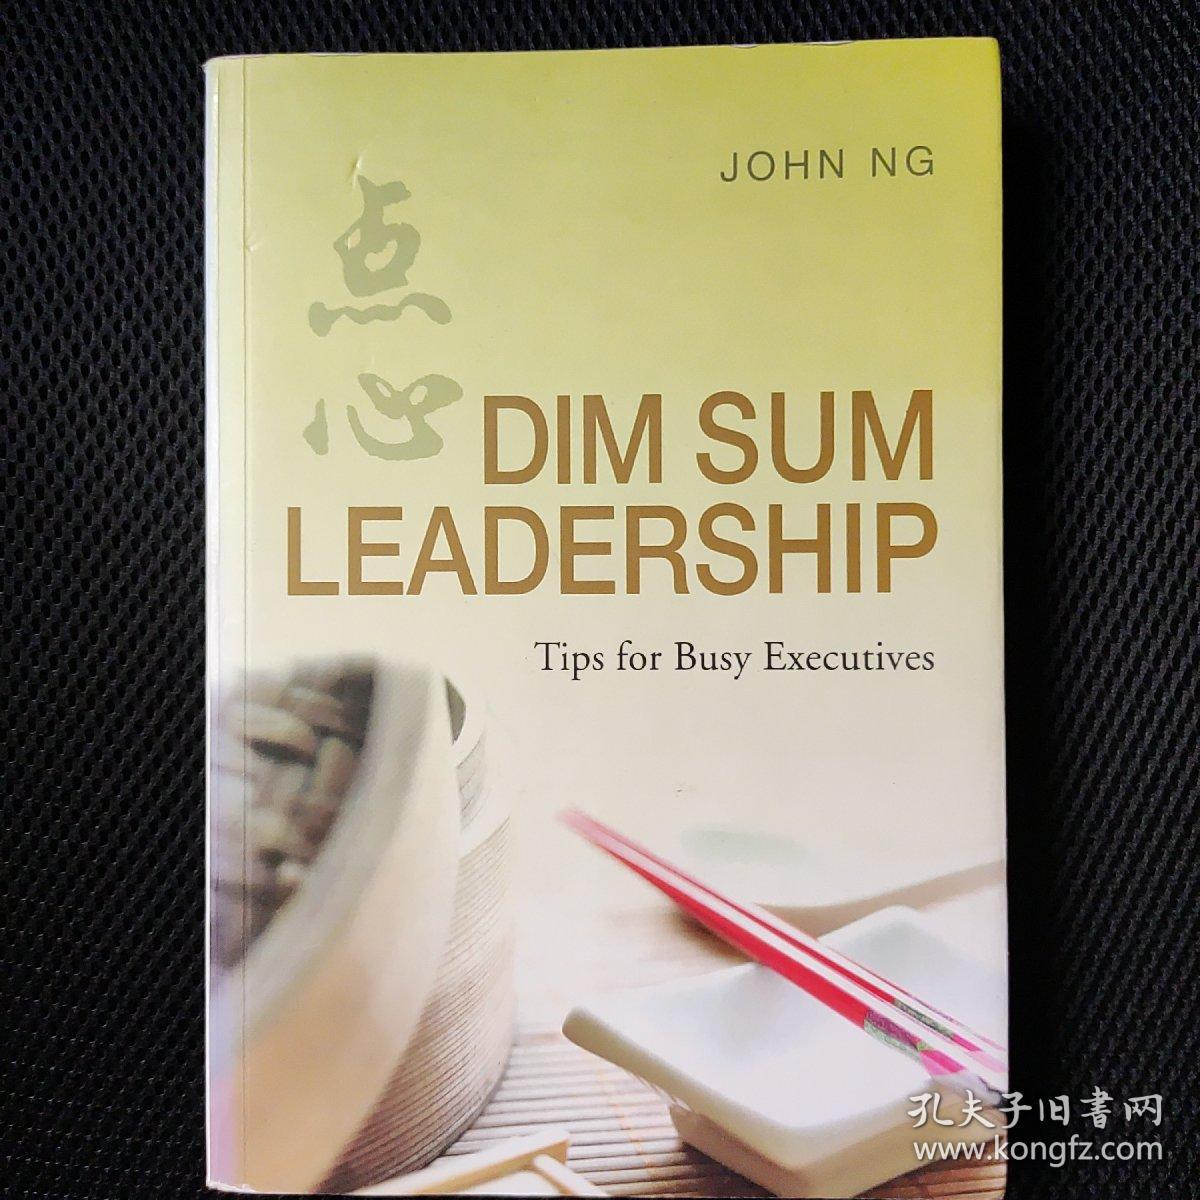 Dim Sum Leadership